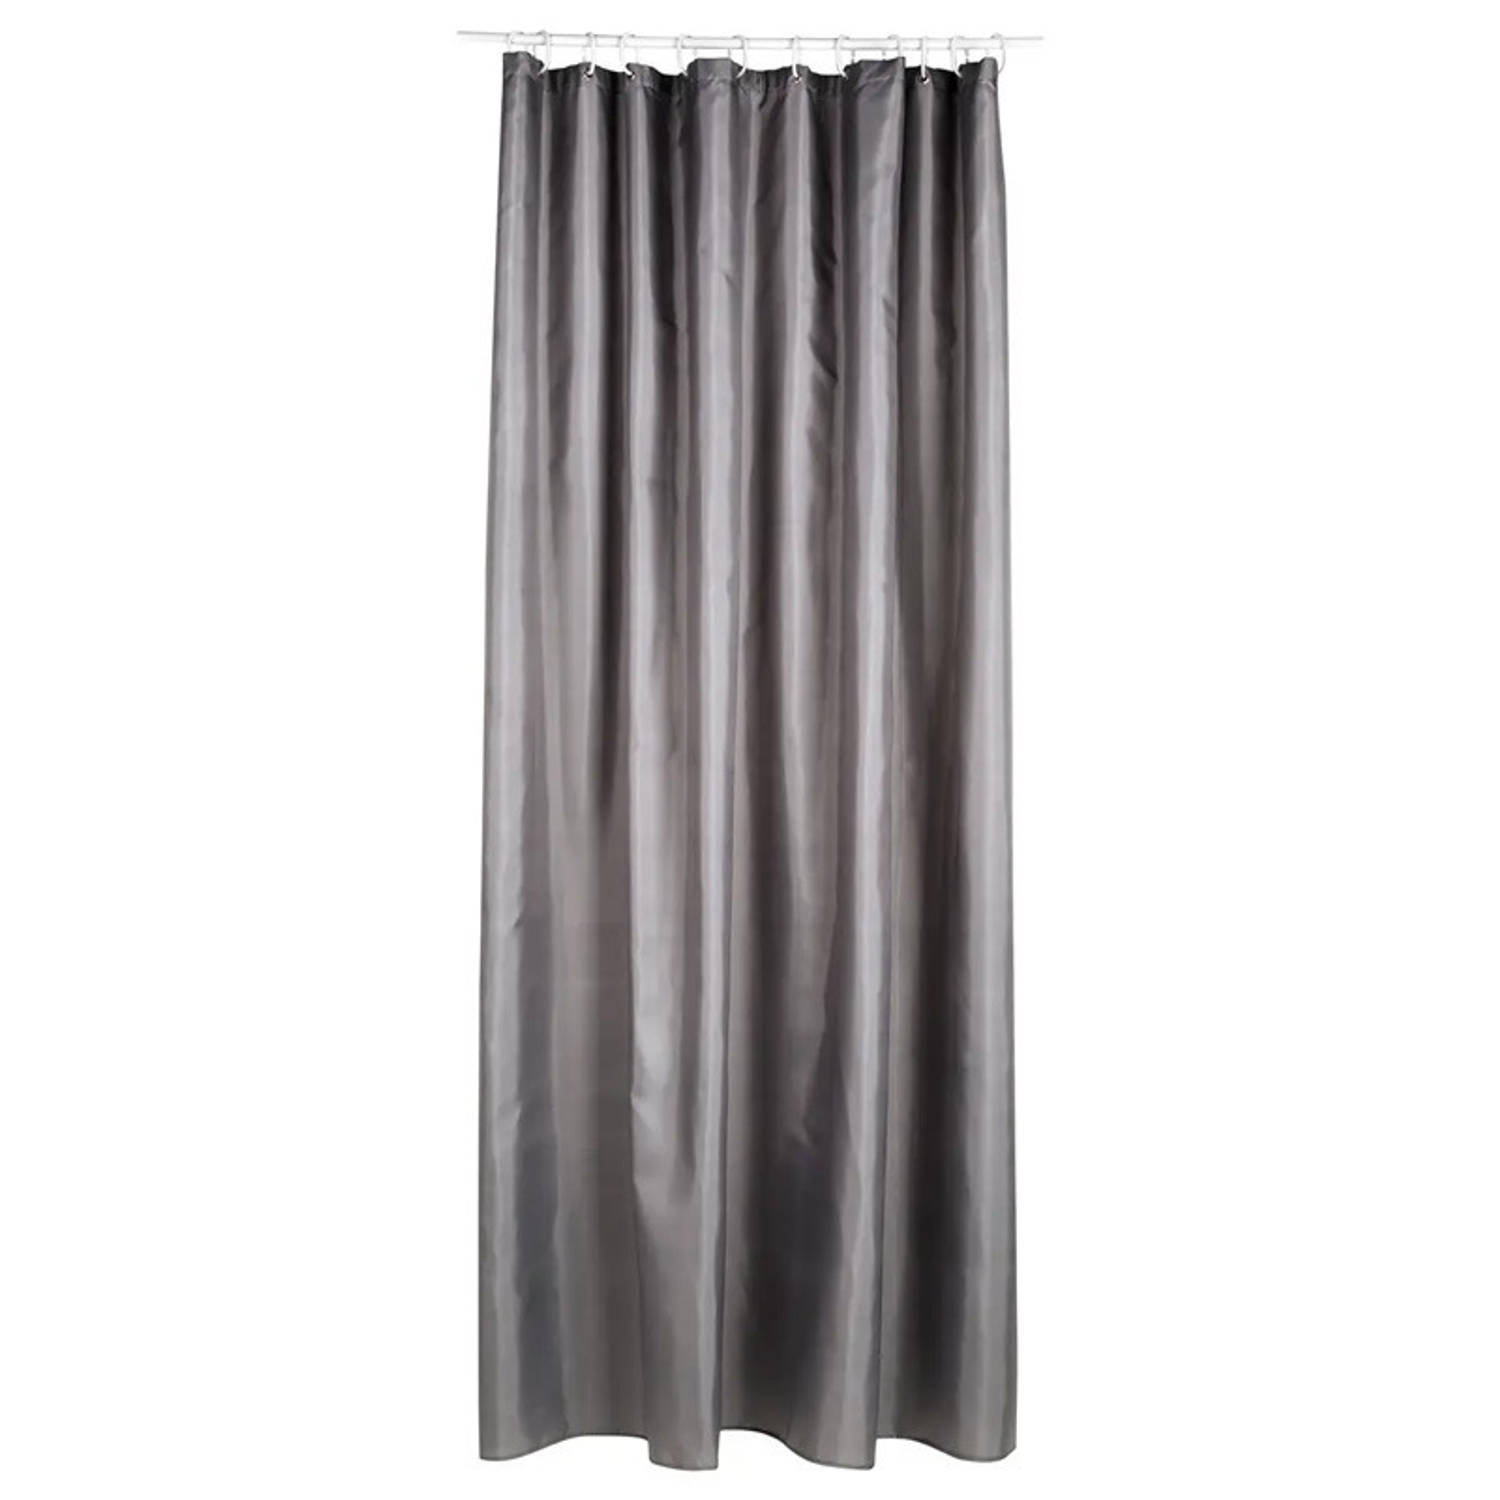 5Five Douchegordijn - grijs - polyester - 180 x 200 cm - inclusief ringen - Voor bad en douche